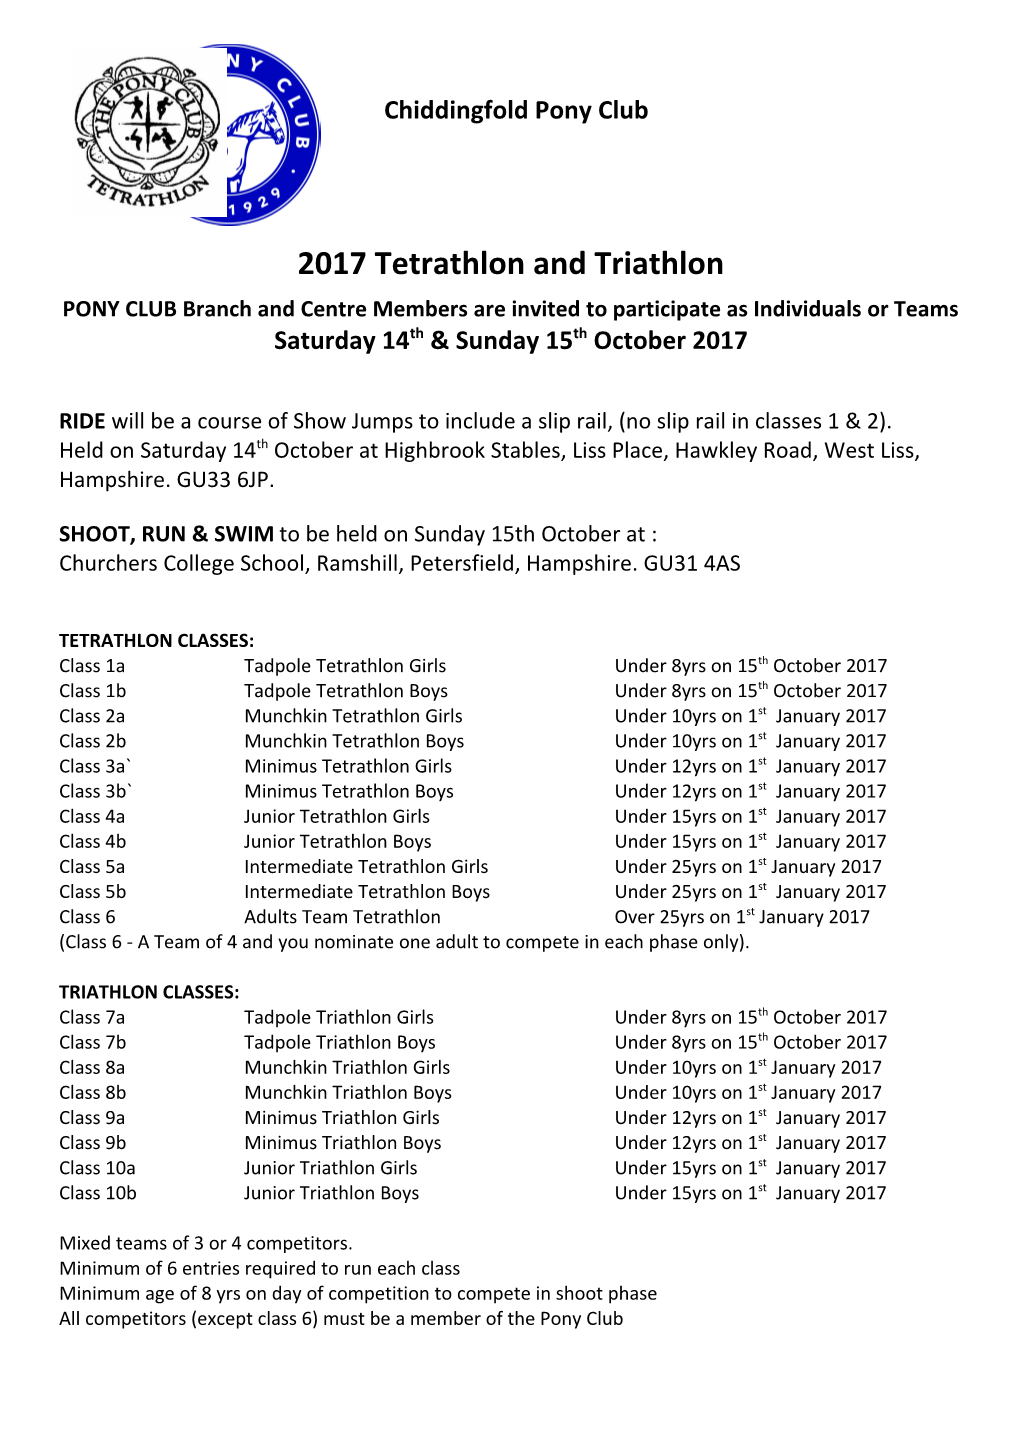 New Forest Hunts Pony Club Annual Tetrathlon & Triathon